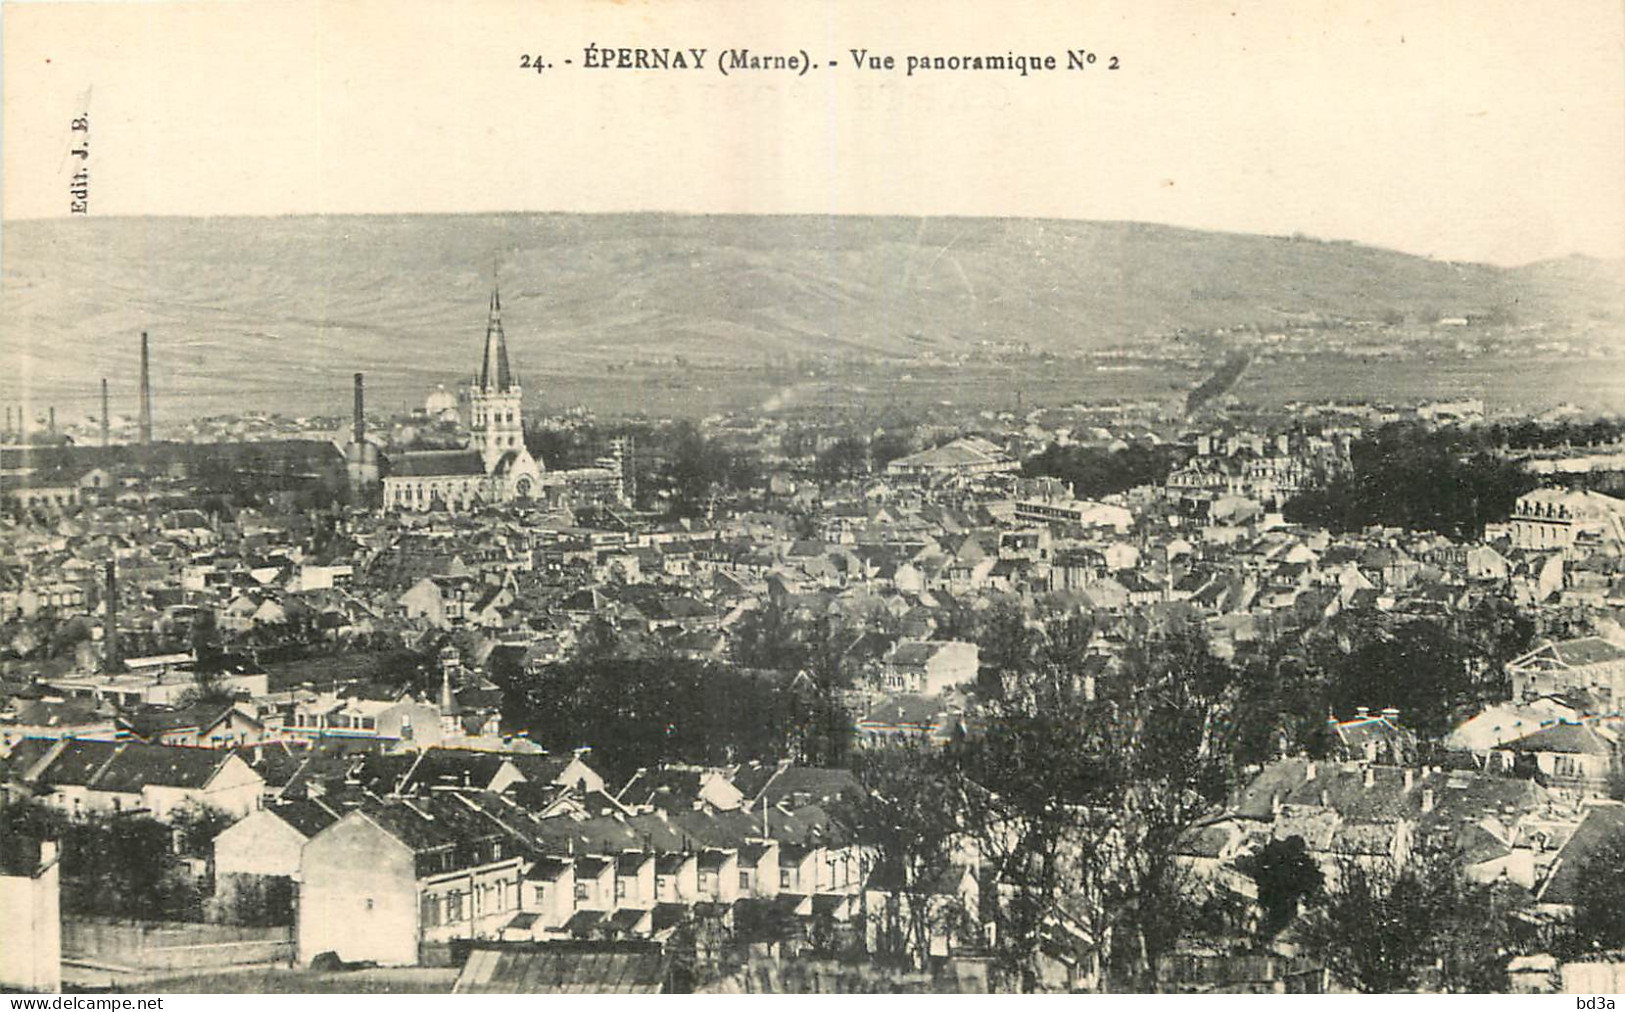 51 - EPERNAY - VUE PANORAMIQUE N° 2 - Edit. J.B. - 24  - Epernay